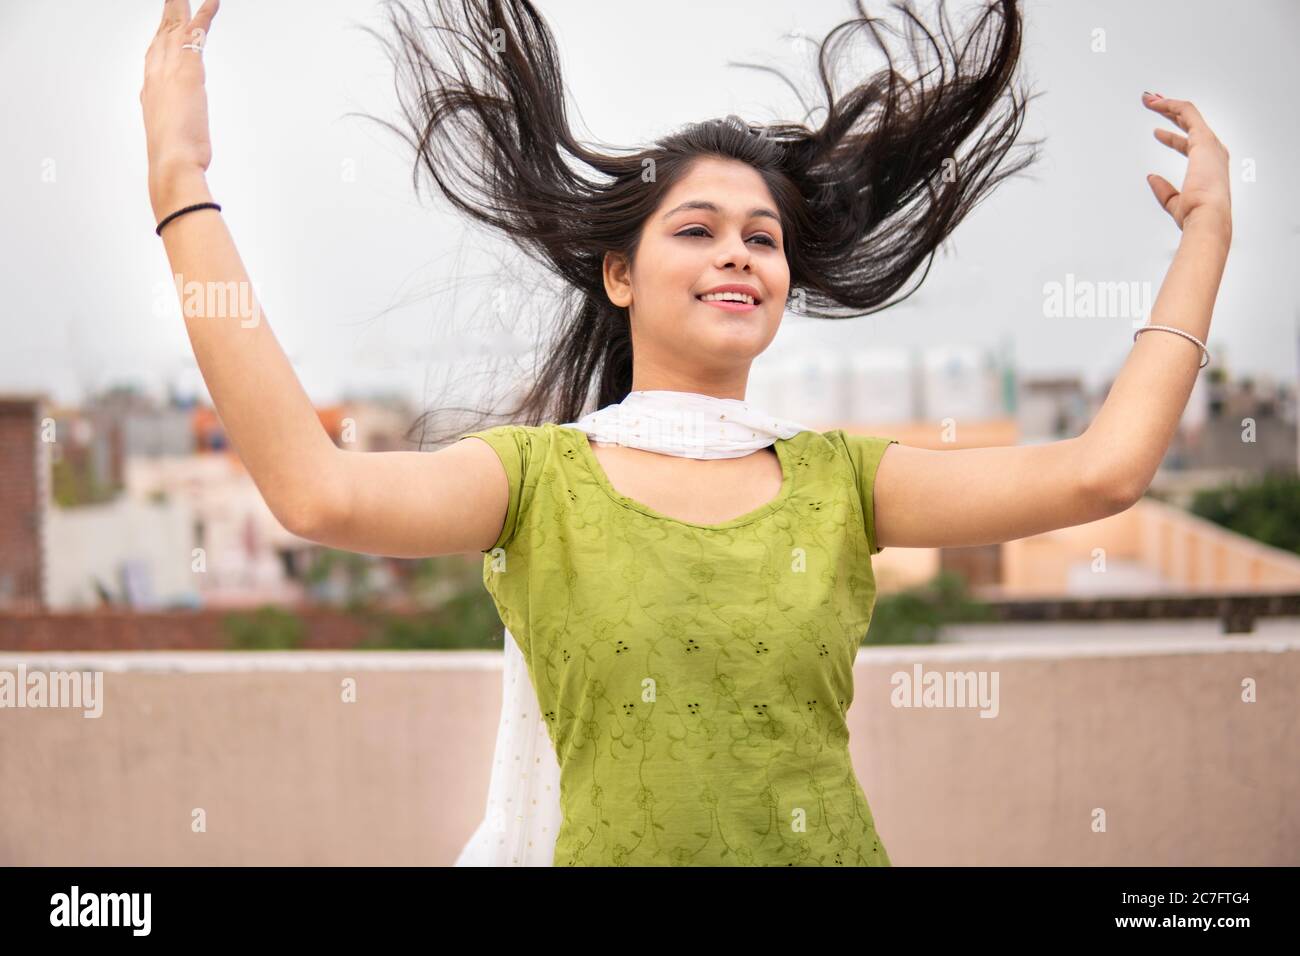 Belle, heureuse indienne jeune fille de tard en adolescence de jeter les cheveux dans l'air et de profiter de l'air frais en extérieur. Elle regarde et donne un sourire éclatant. Banque D'Images